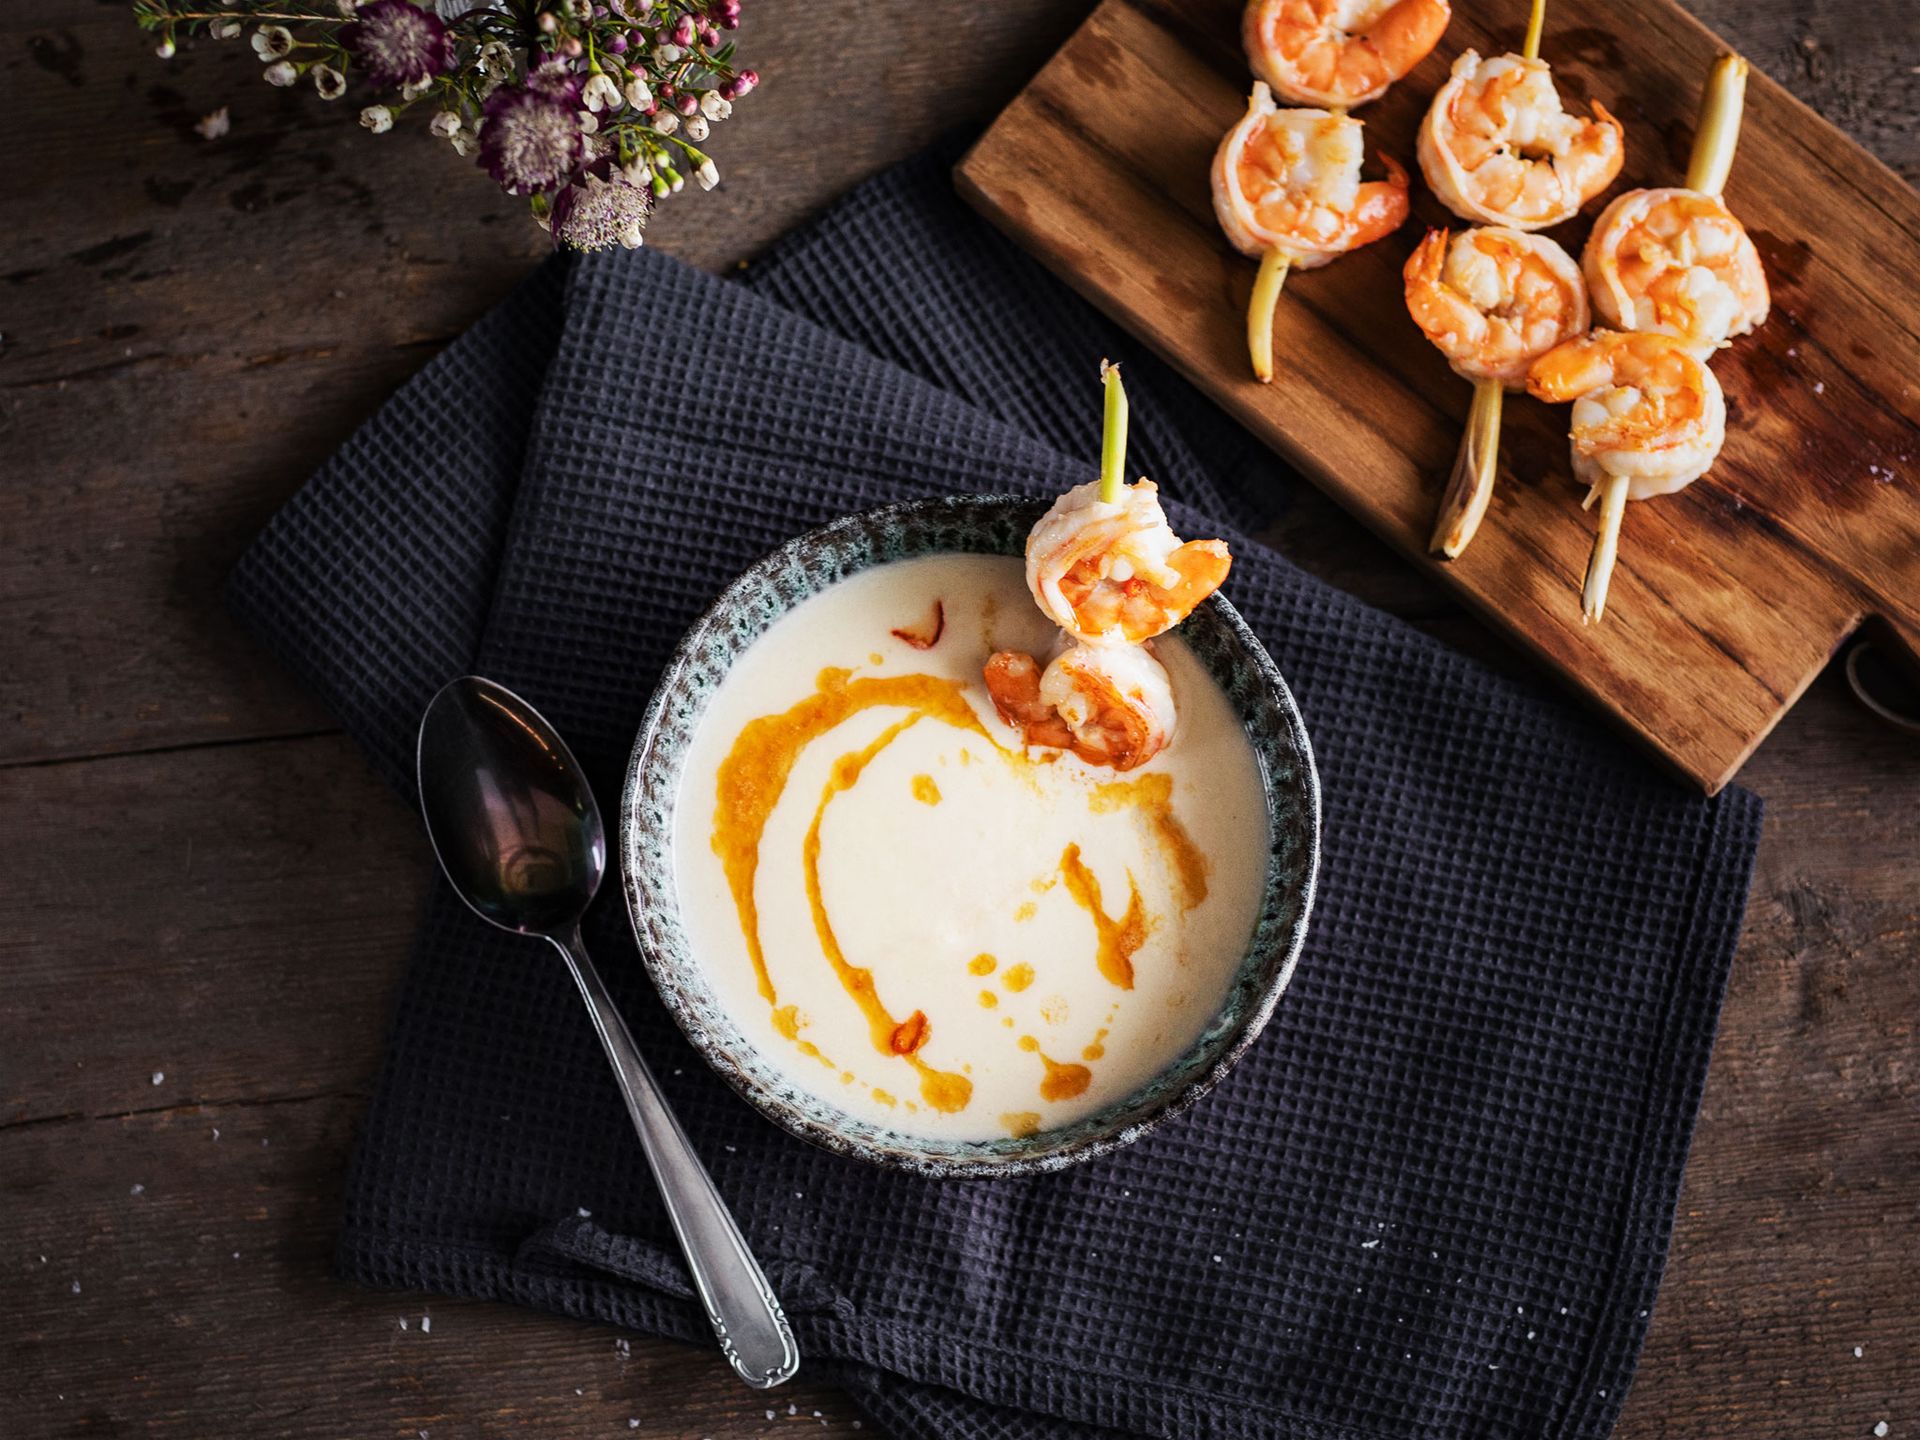 Cauliflower coconut soup with shrimps